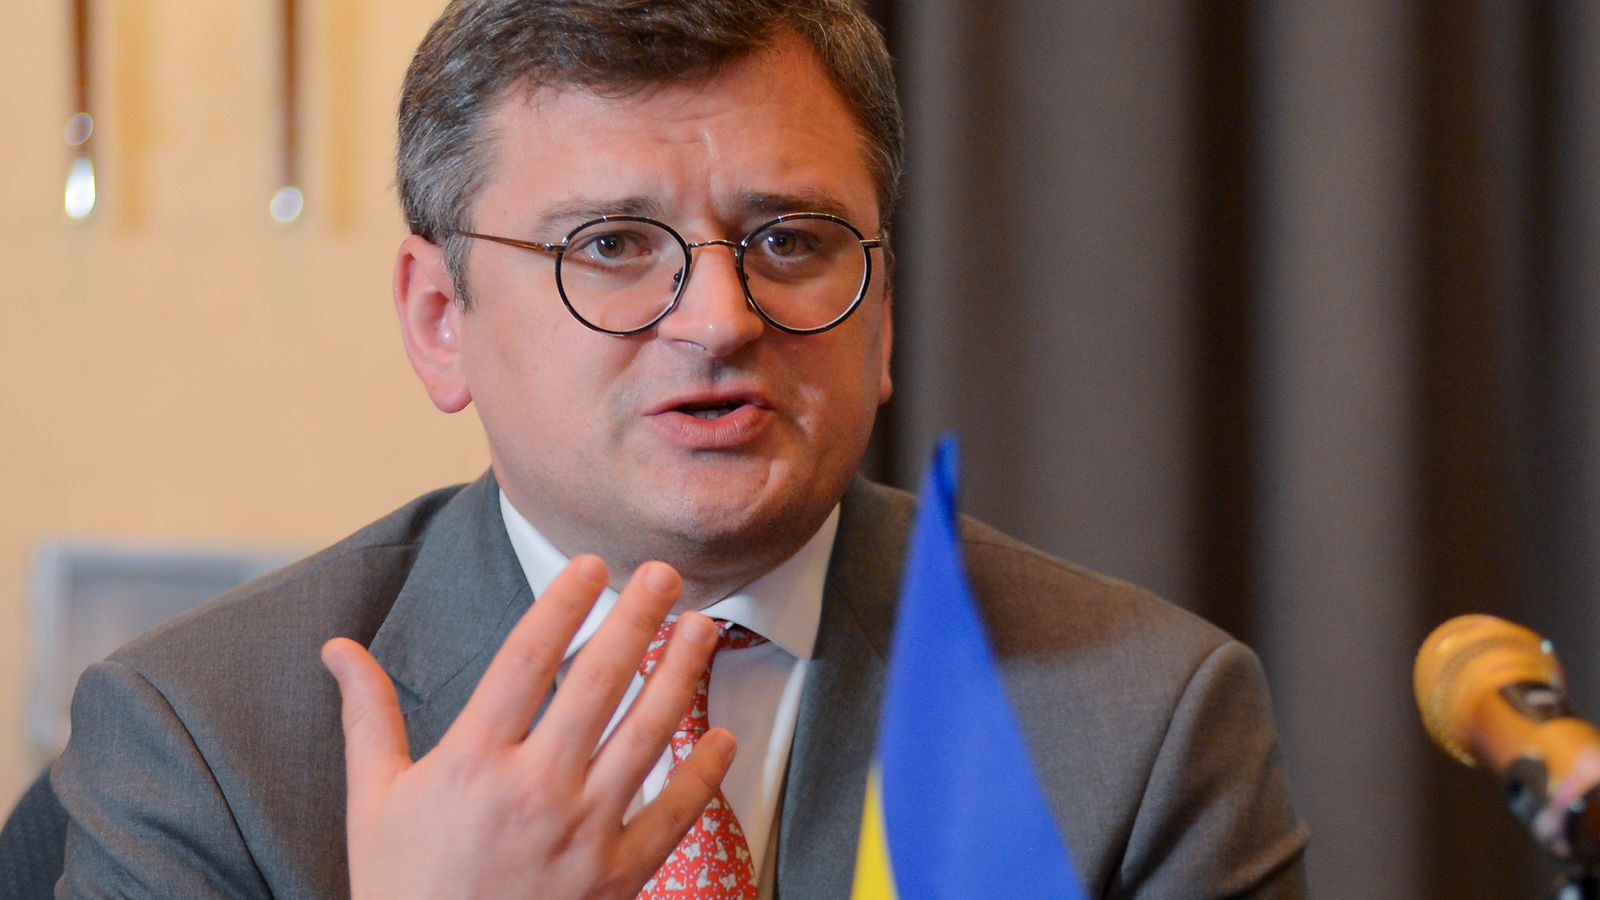 Indice Ucraina: Kiev chiede alla Germania “sì” all’adesione alla NATO